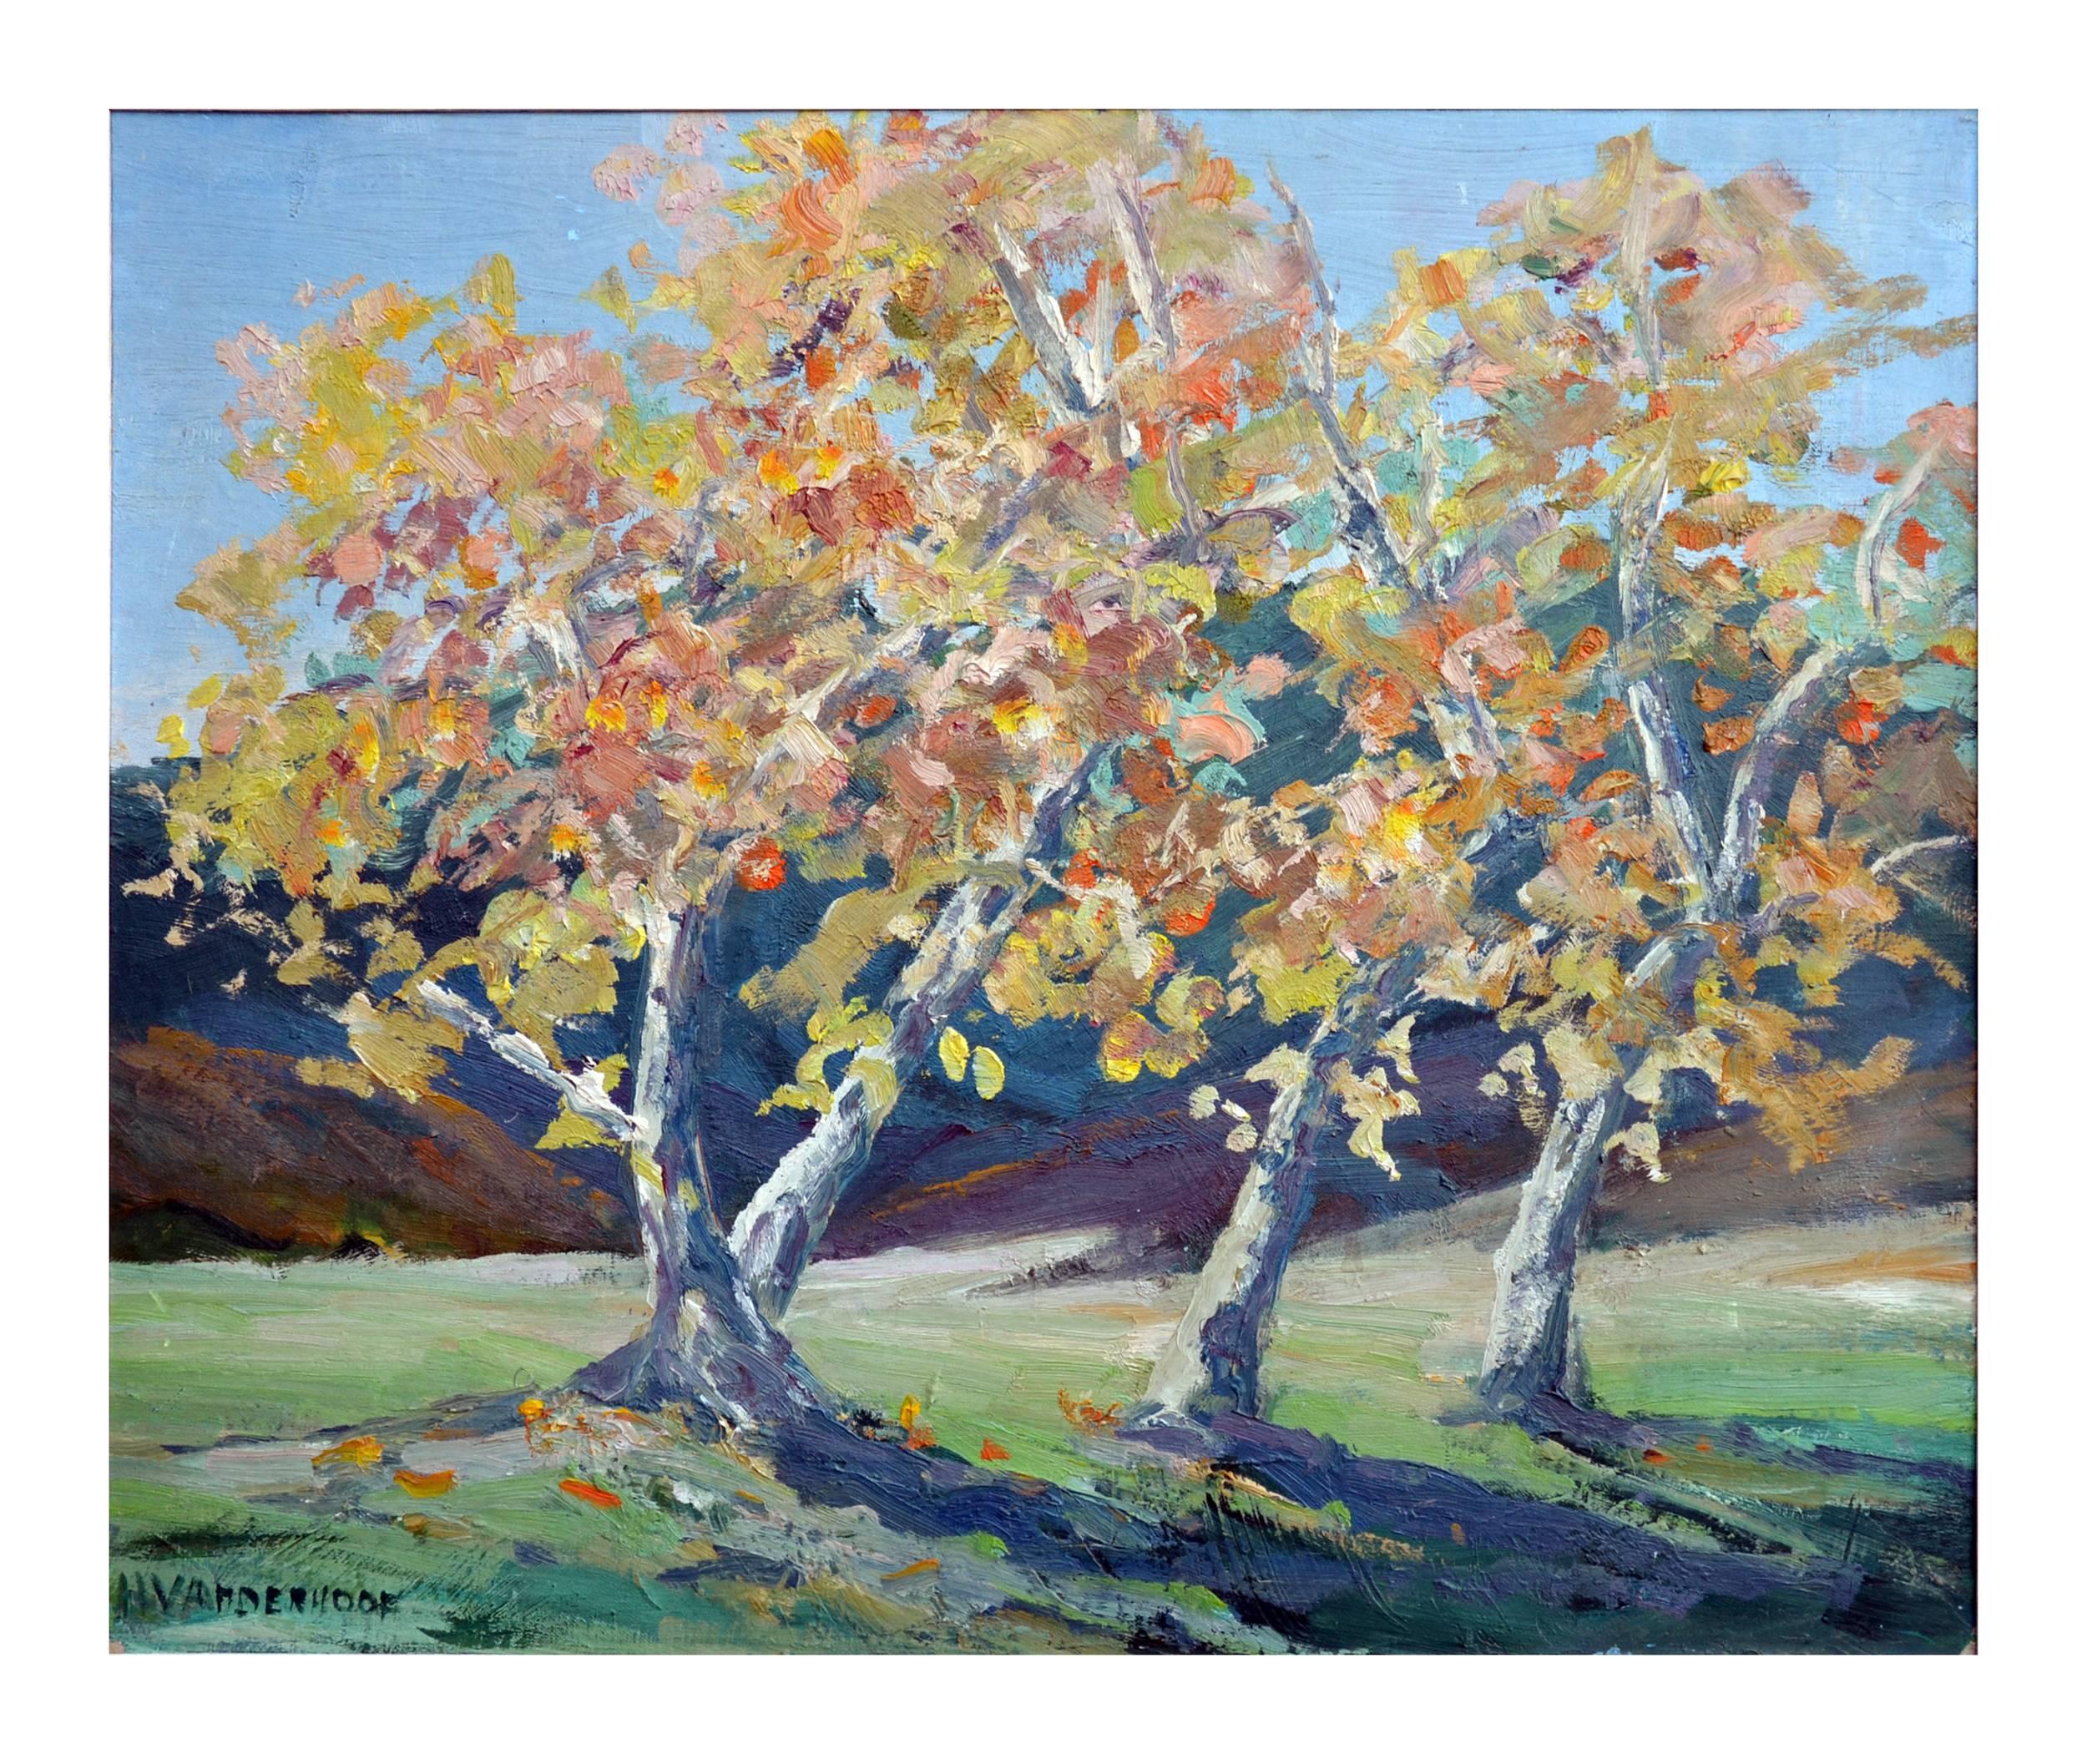 Frühjahr im Carmel Valley Sycamores-Landschaft – Painting von H. Vanderhoof